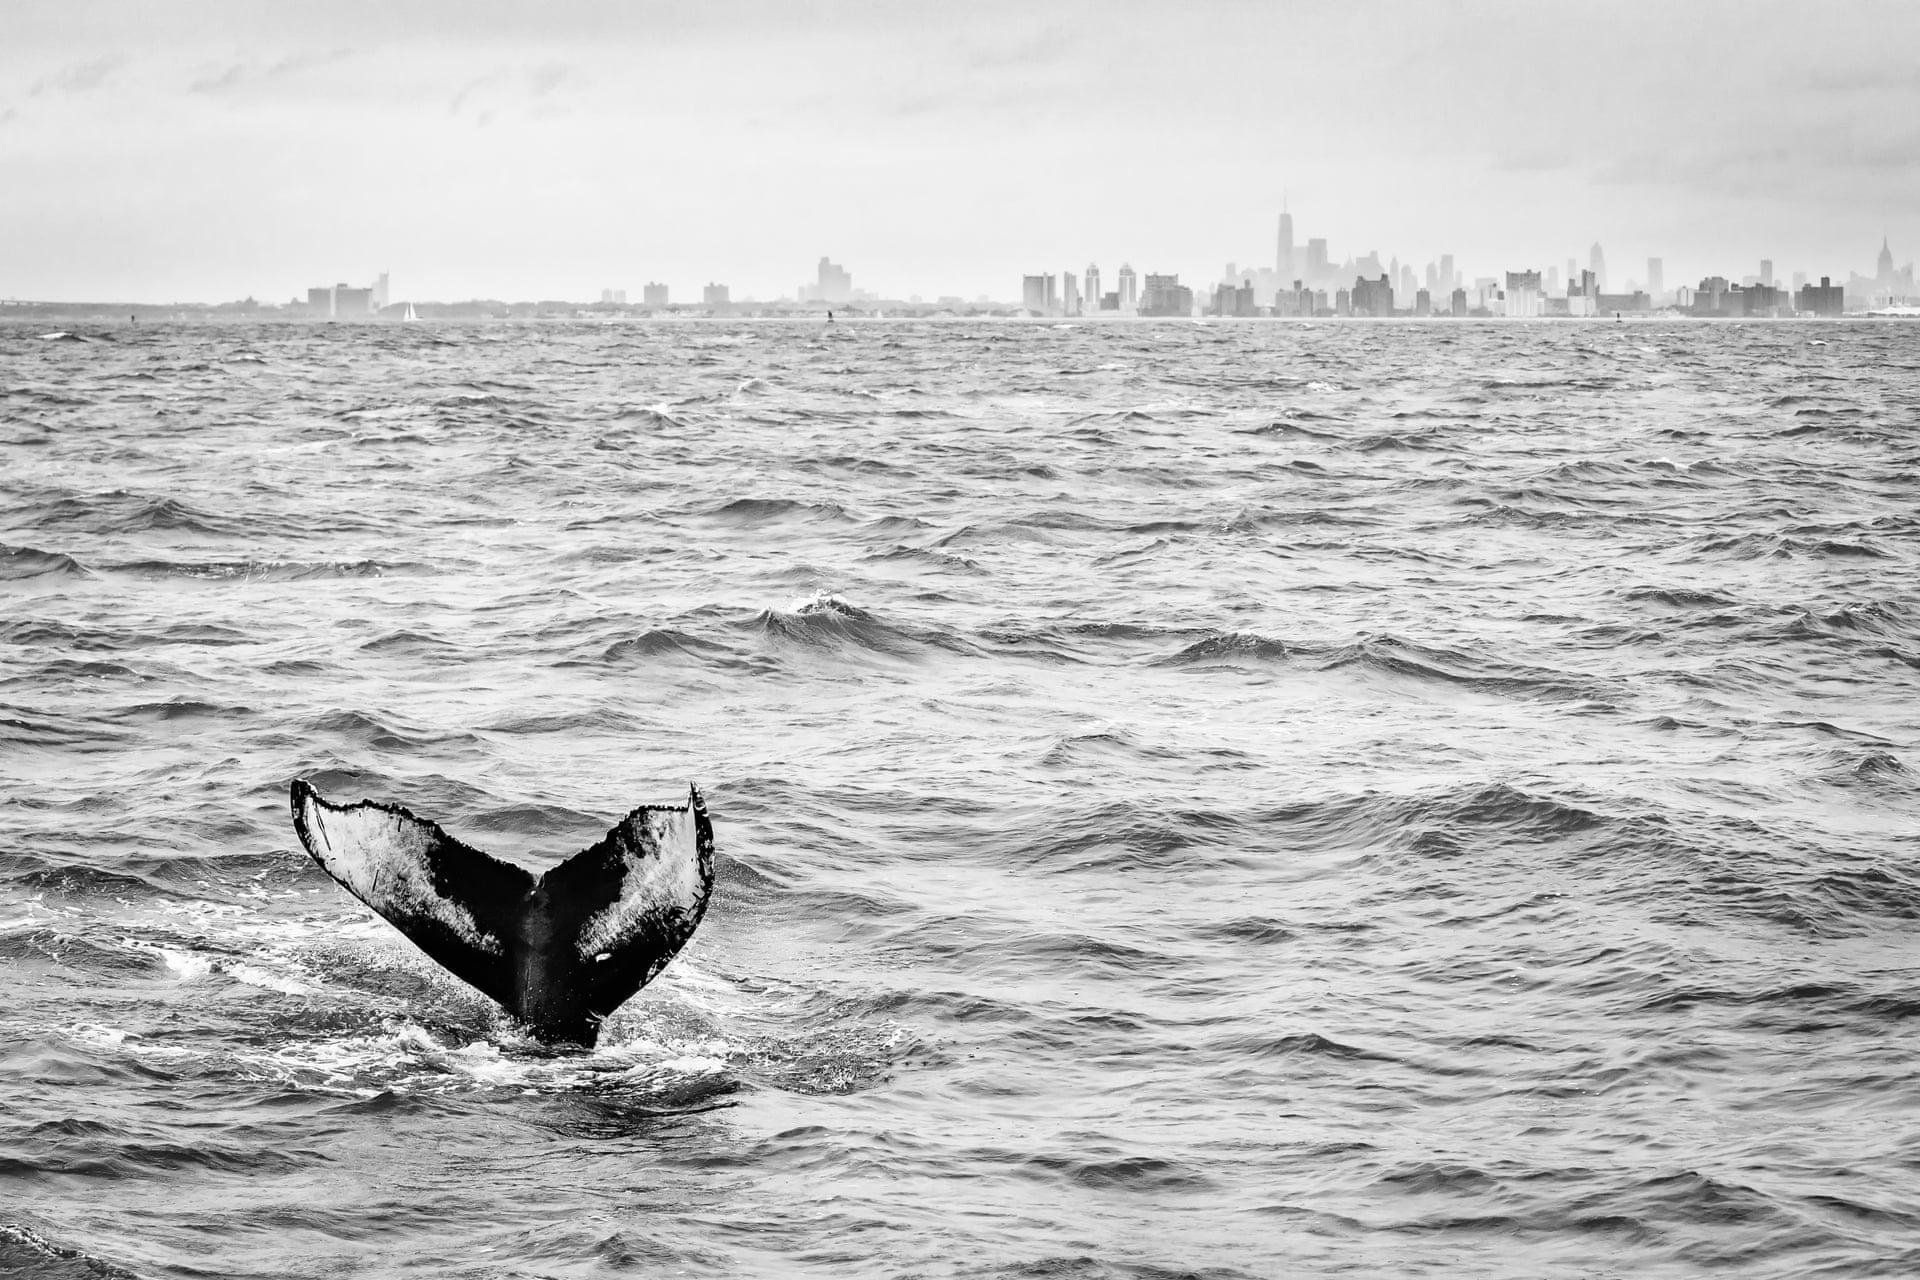 Горбатый кит у берегов Нью-Йорка, США. Фото: Маттийс Ноом. Победитель в категории &laquo;Дикая природа в городе&raquo;
&nbsp;